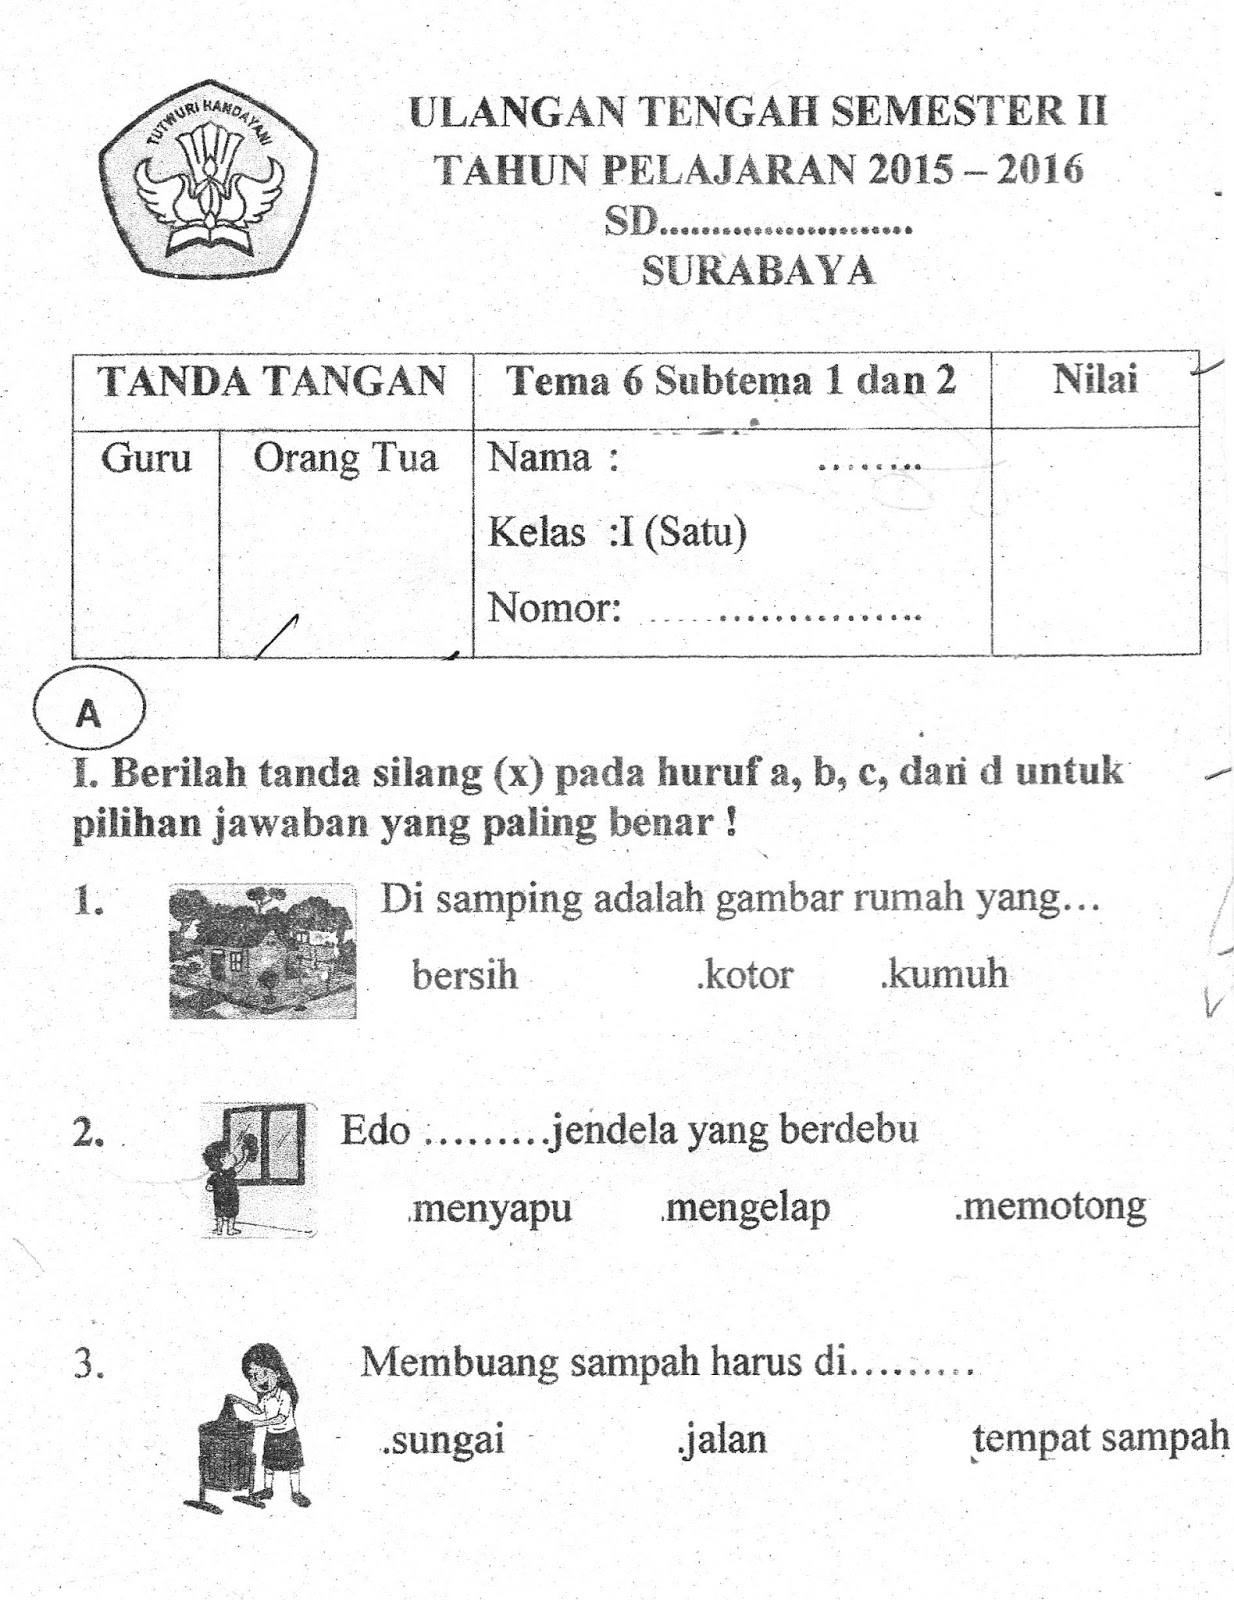 Buku Tema 6 Kelas 1 Sd K13 For Android Apk Download S Kom Selamat Datang Di Web Sunarto